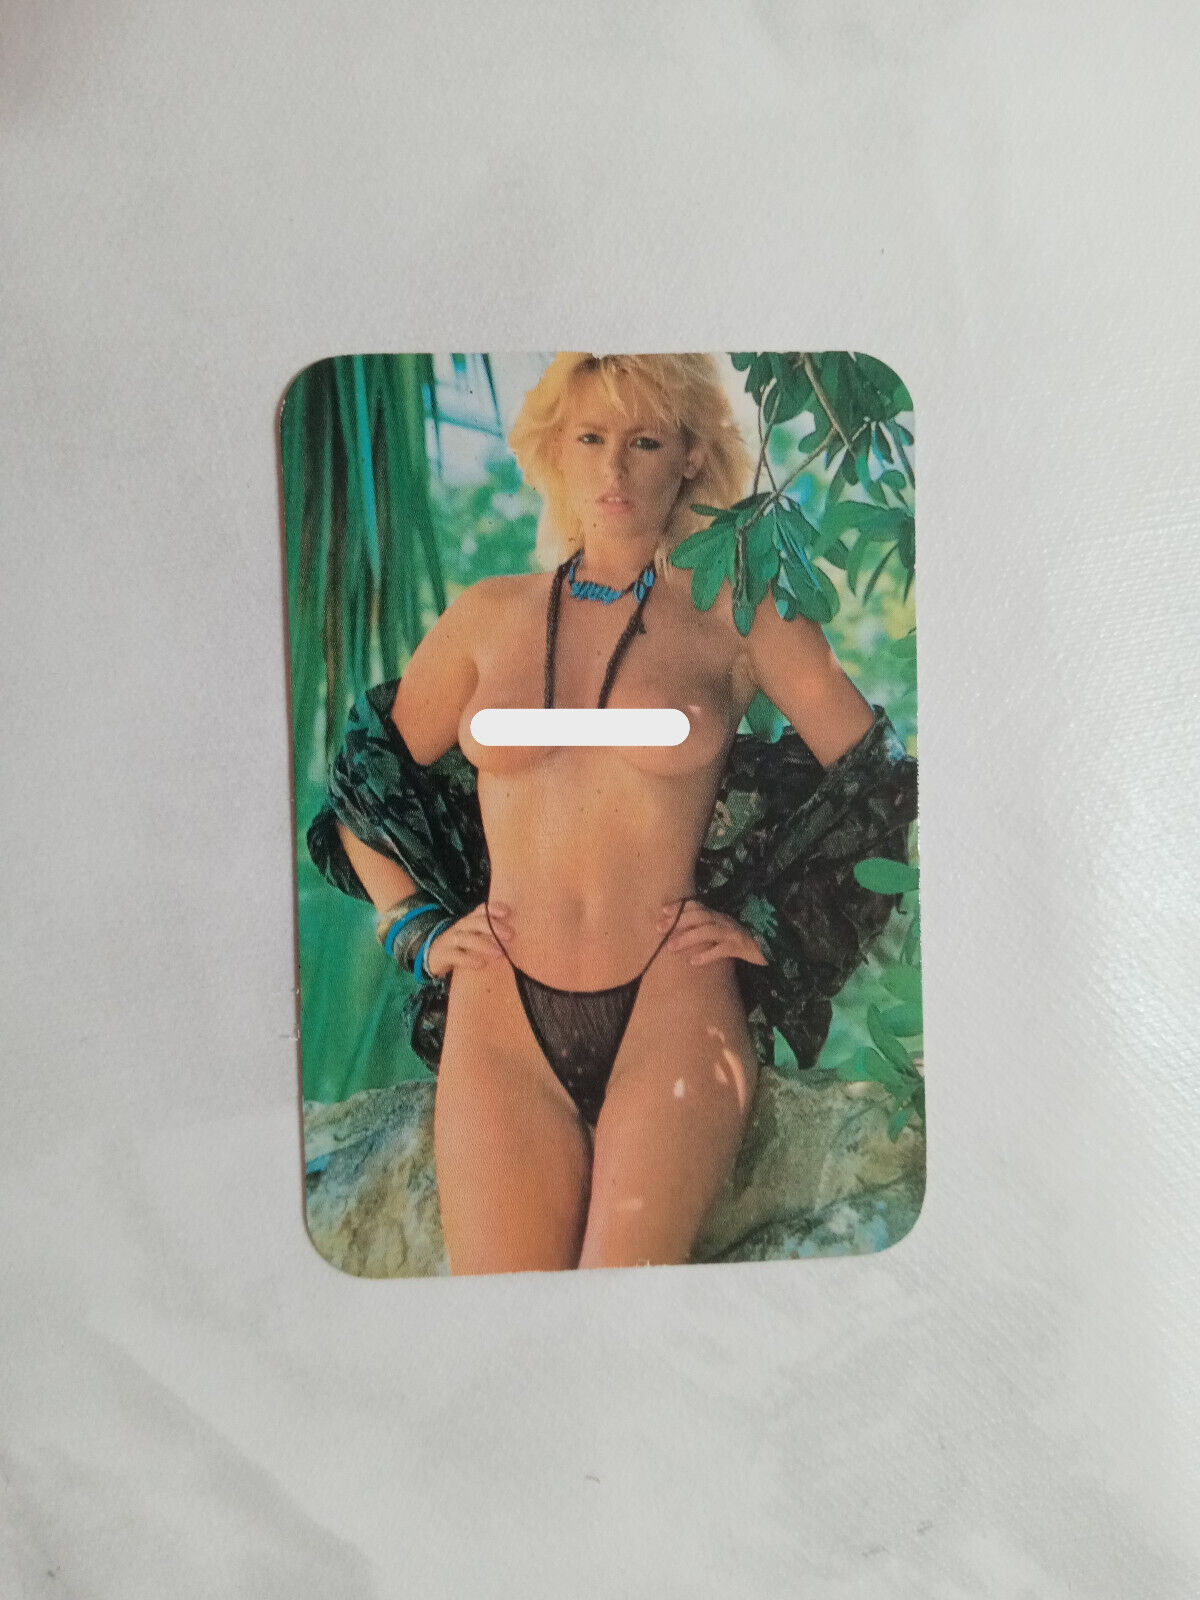 Vintage Erotic 1990 Pin-up pocket calendar - Page 3 model NIKE CLARKE